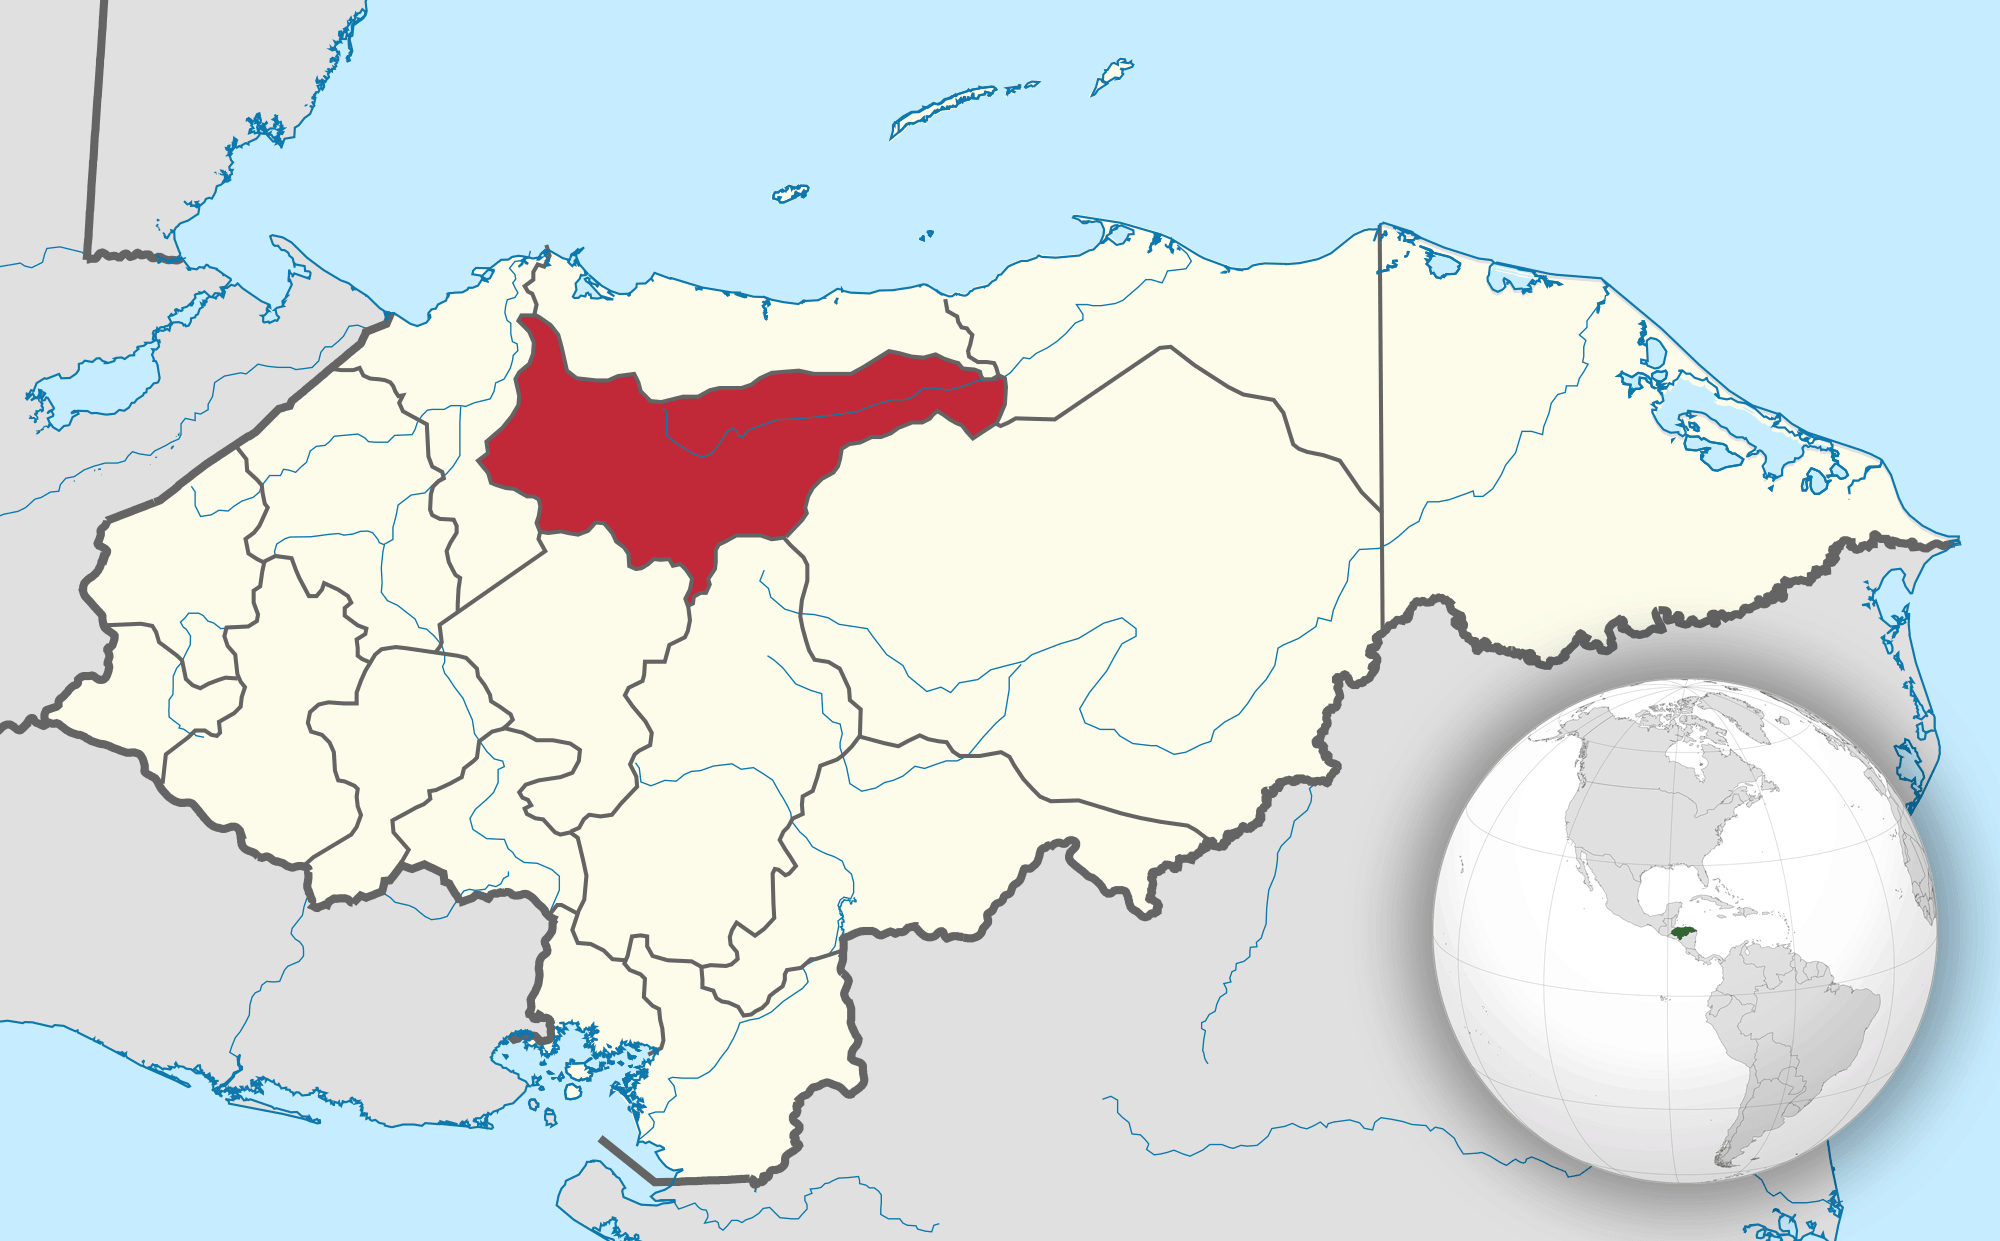 خريطة توضح باللون الأحمر منظقة (يورو) في الهندوراس.